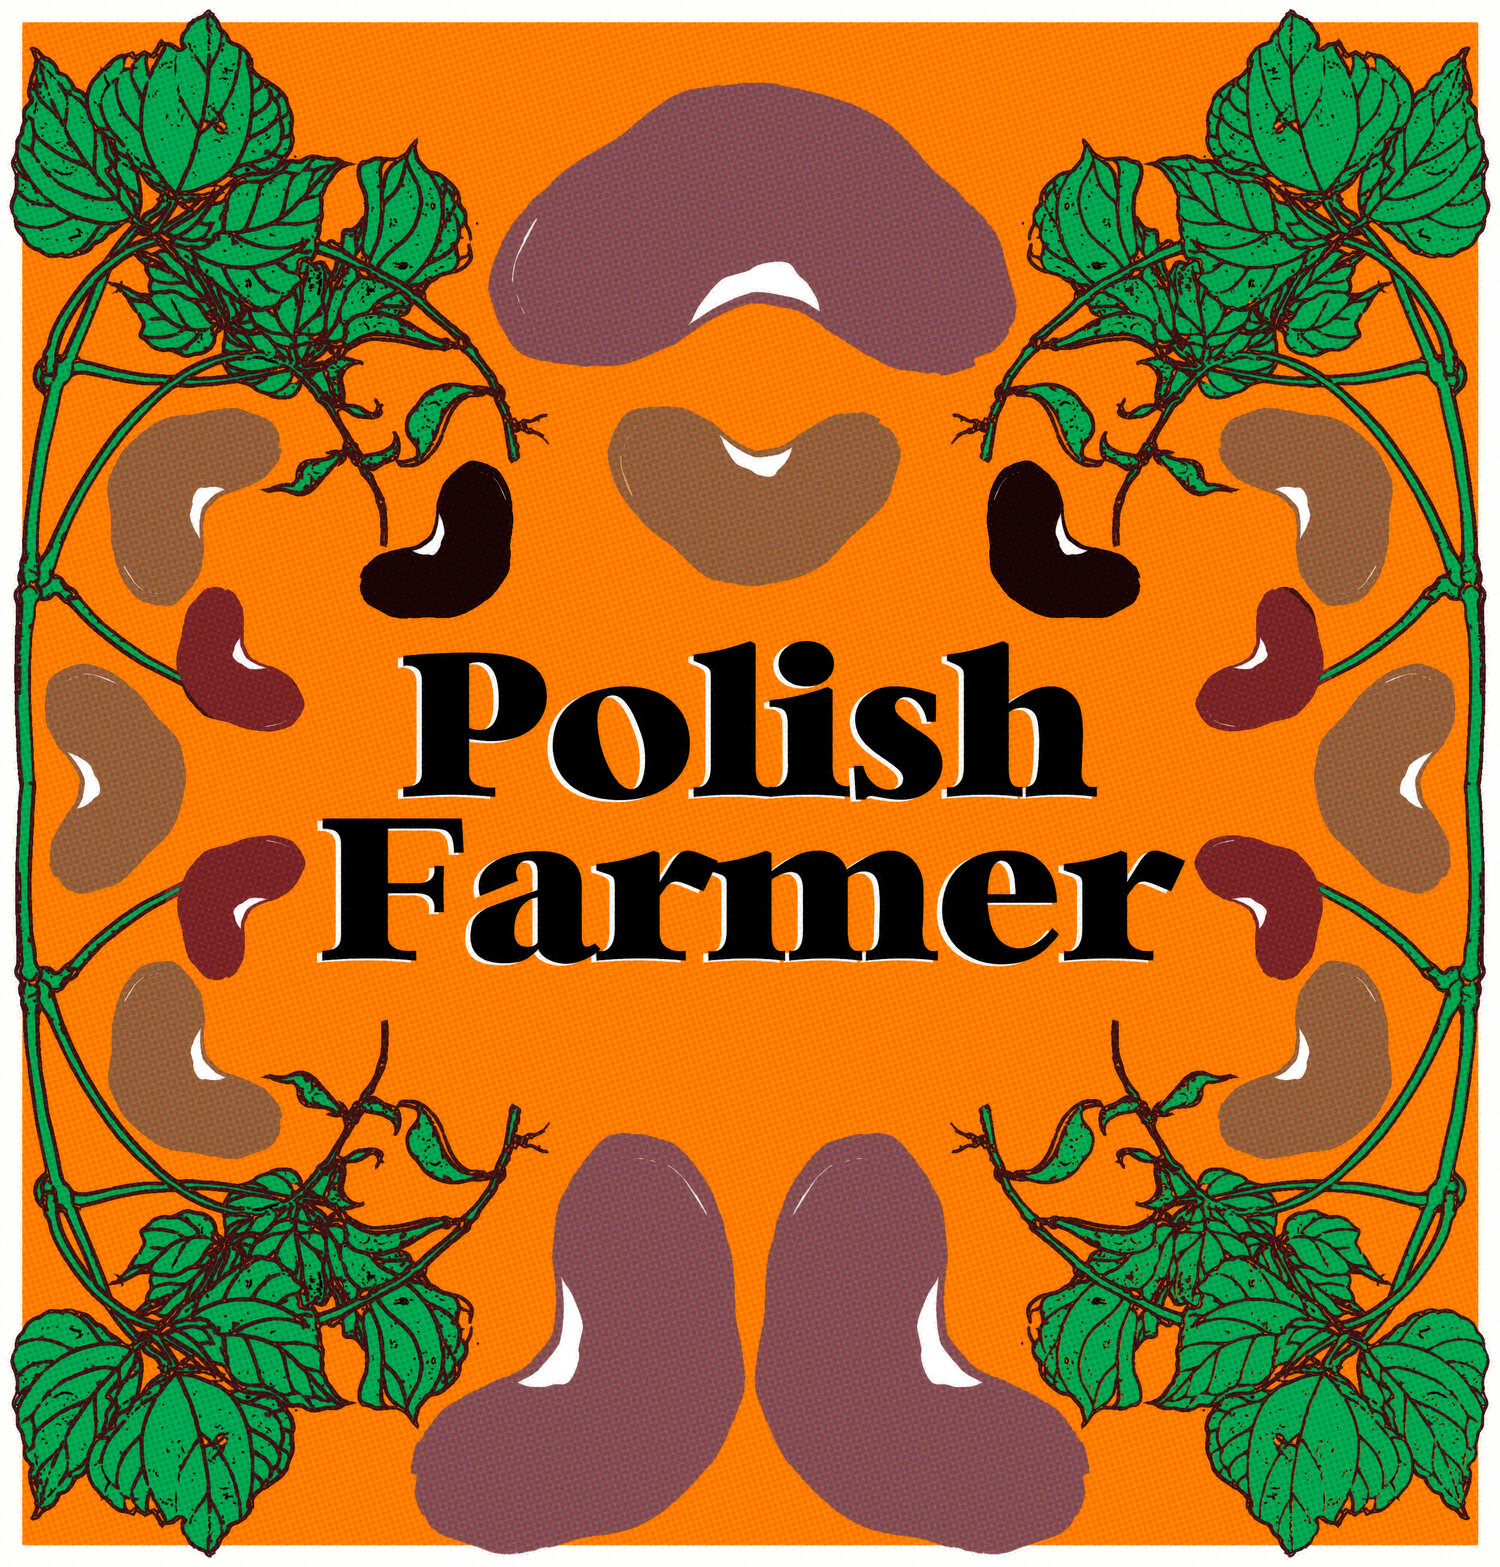 Polish Farmer: Heirloom Dry Beans and Produce